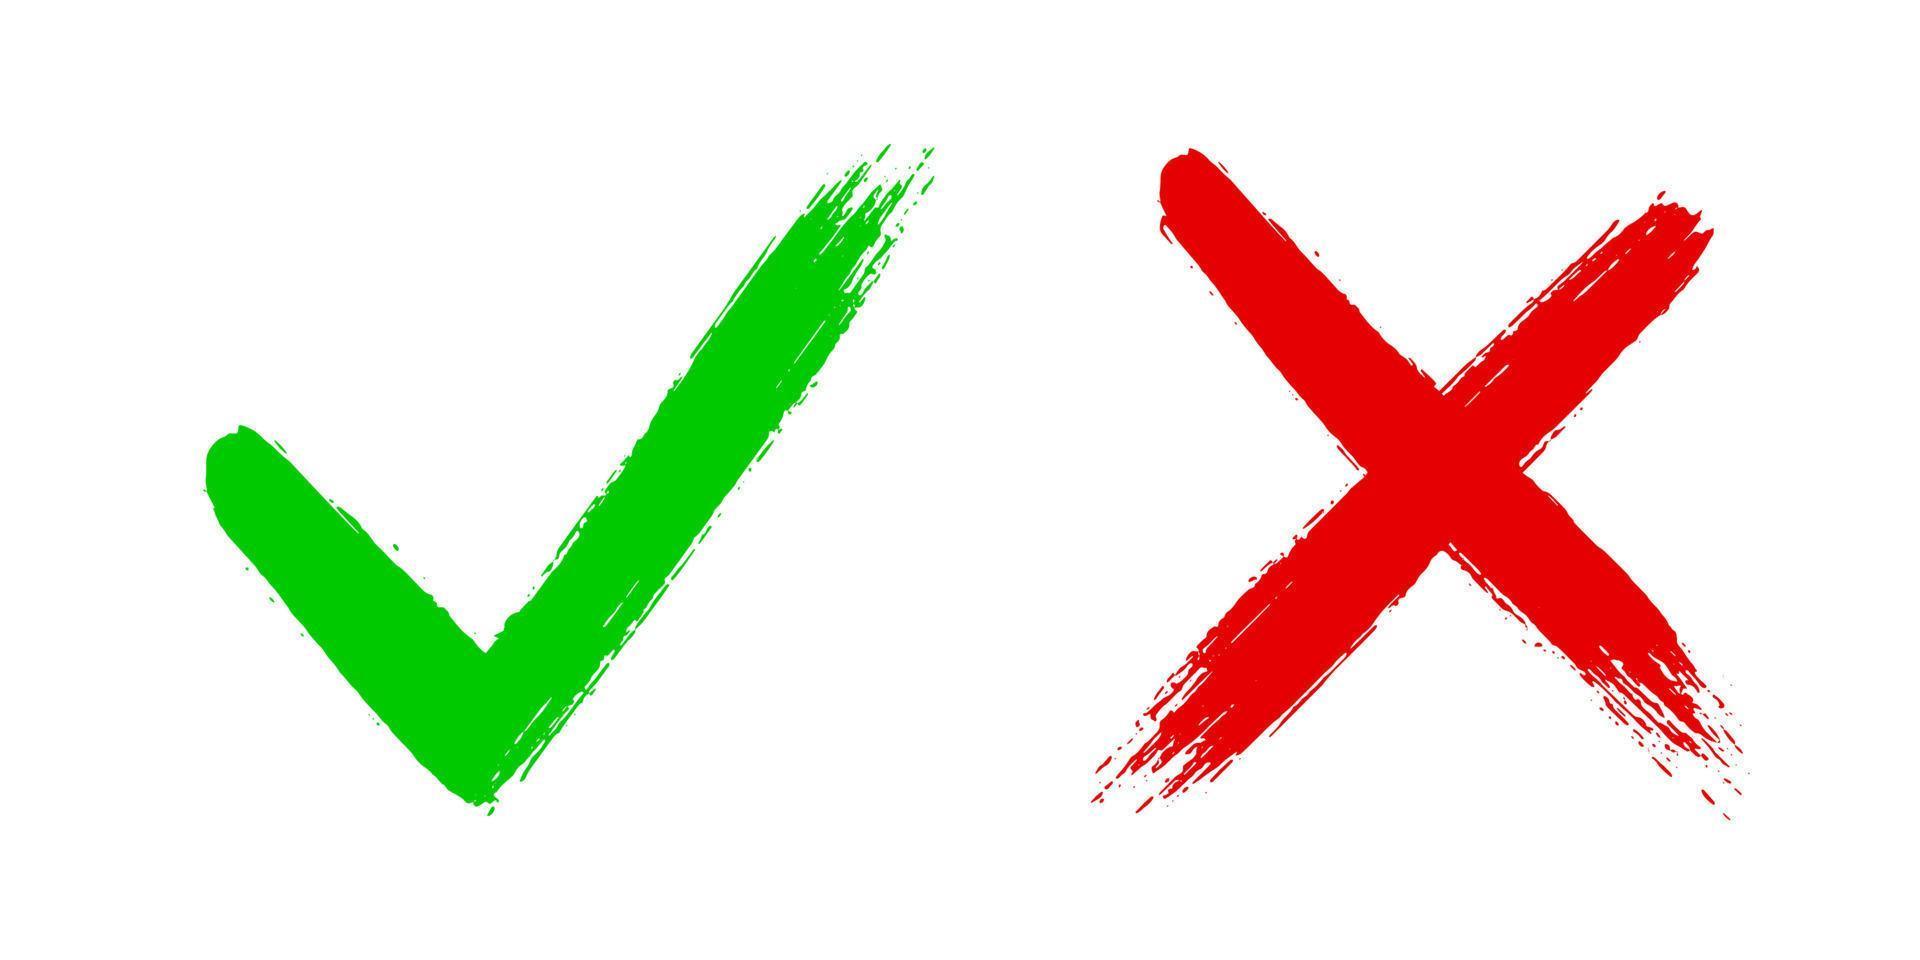 kreuzen Sie x und kreuzen Sie v an. OK Häkchen-Vektorillustration lokalisiert auf weißem Hintergrund. vektor